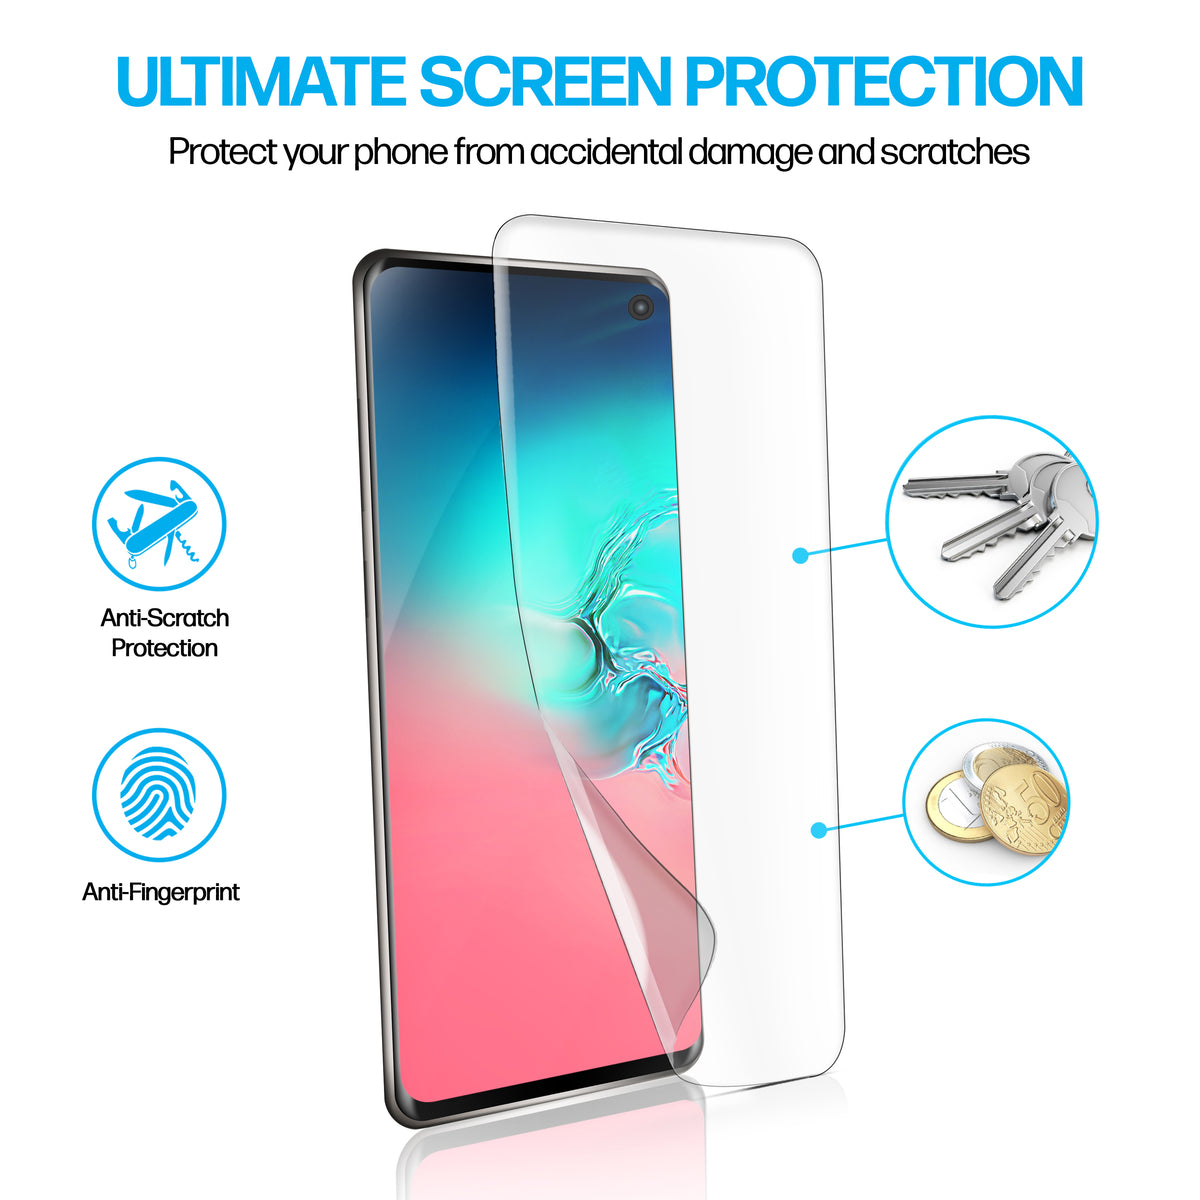 Samsung Galaxy S10 TPU Anti-Scratch Screen Protector Film [2-Pack] Cover